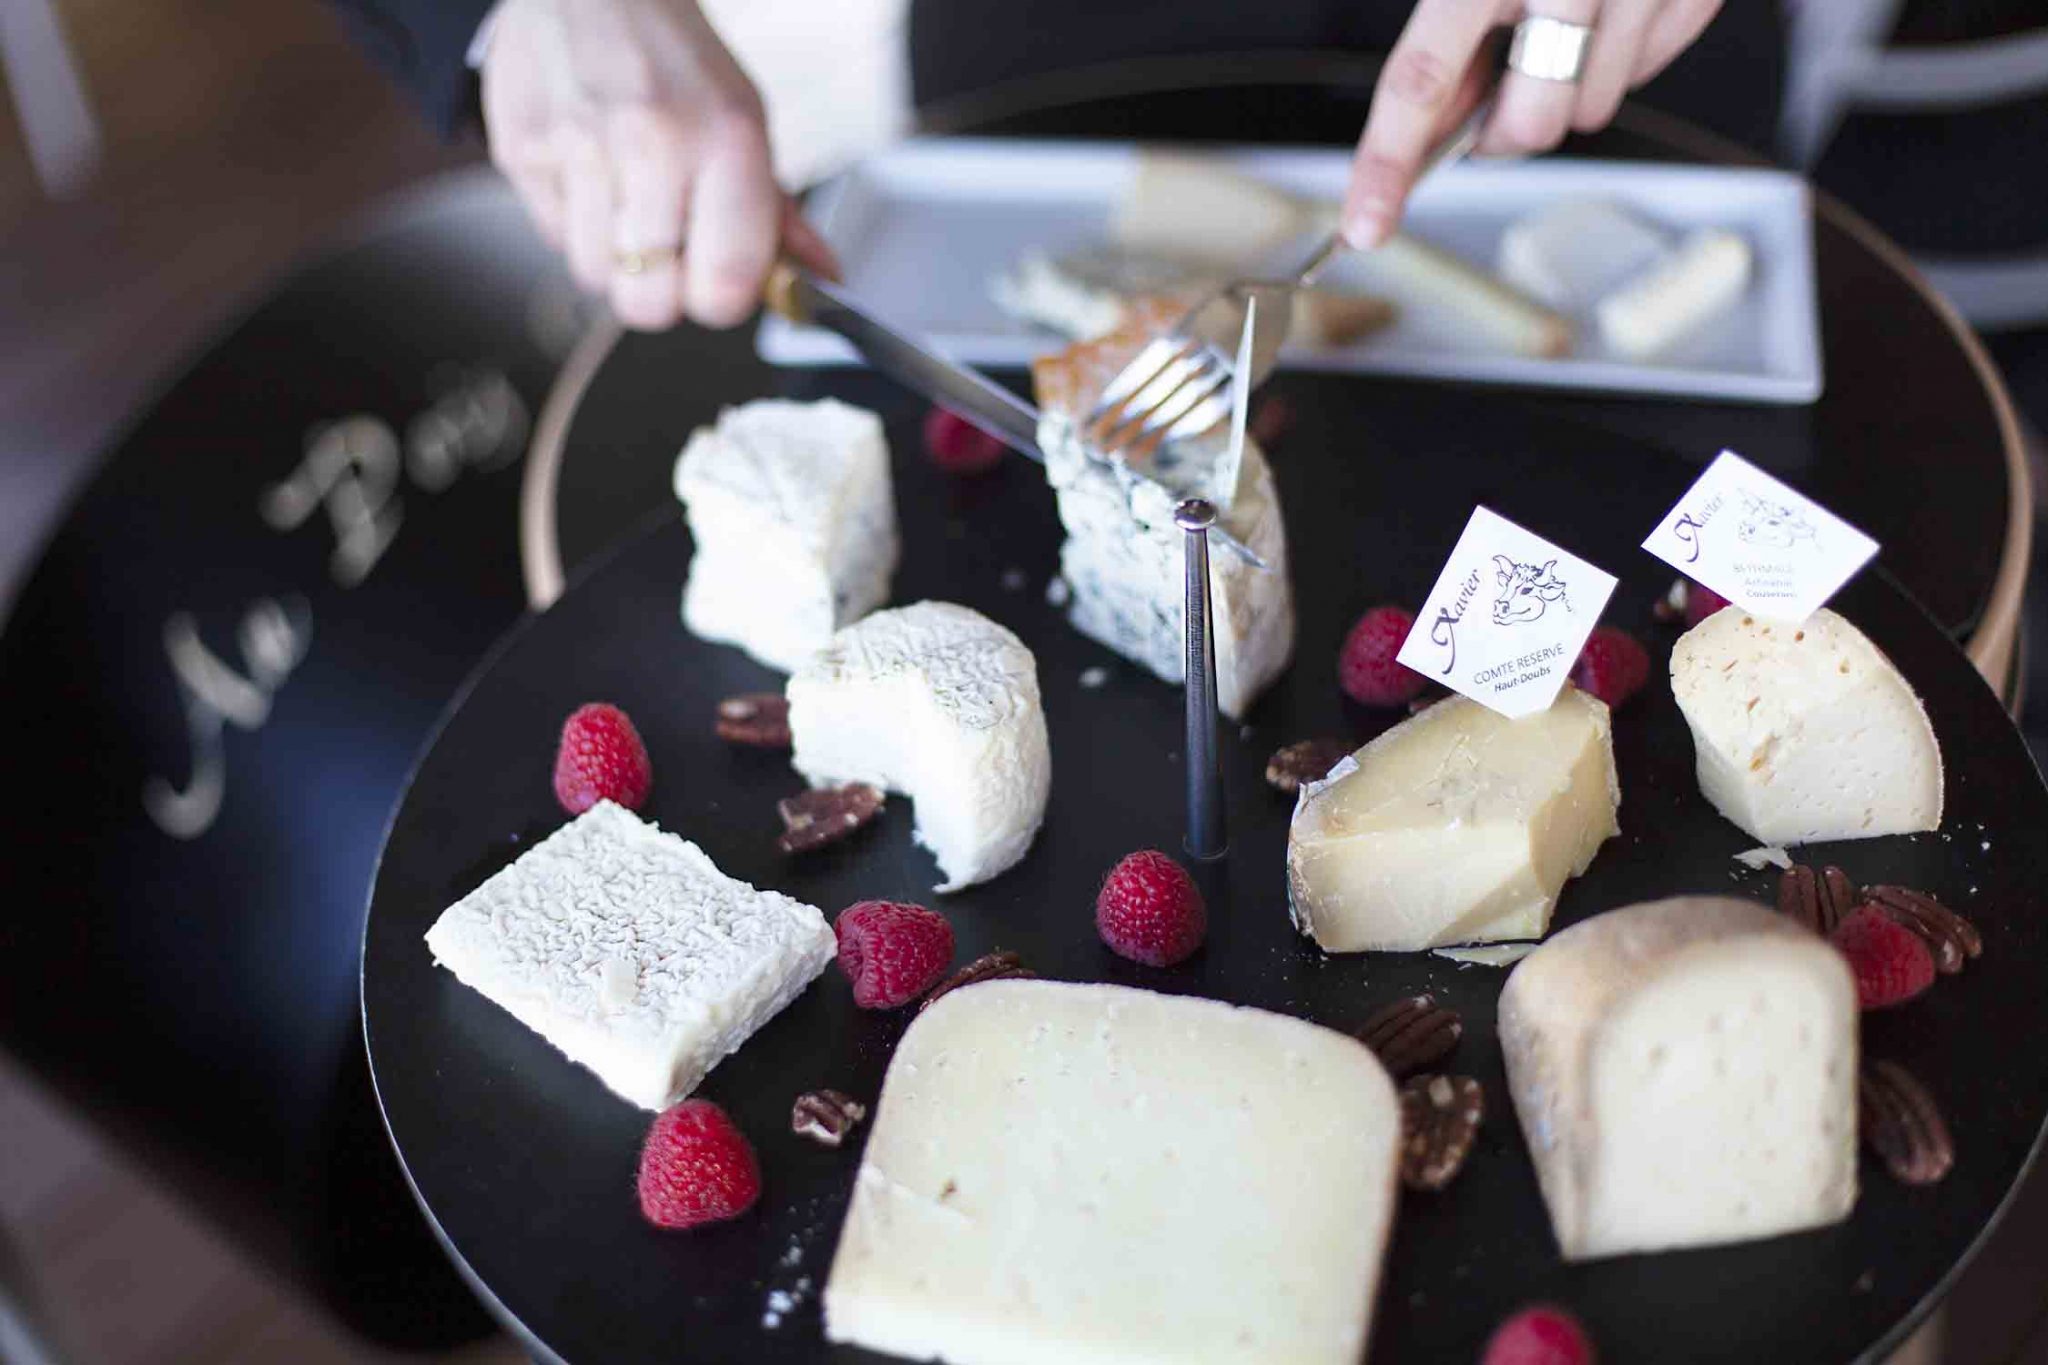 Plateau de fromages avec des framboises servi sur un chariot à fromages COQ de la marque QUISO au restaurant Le Pois Gourmand à Toulouse, 2017